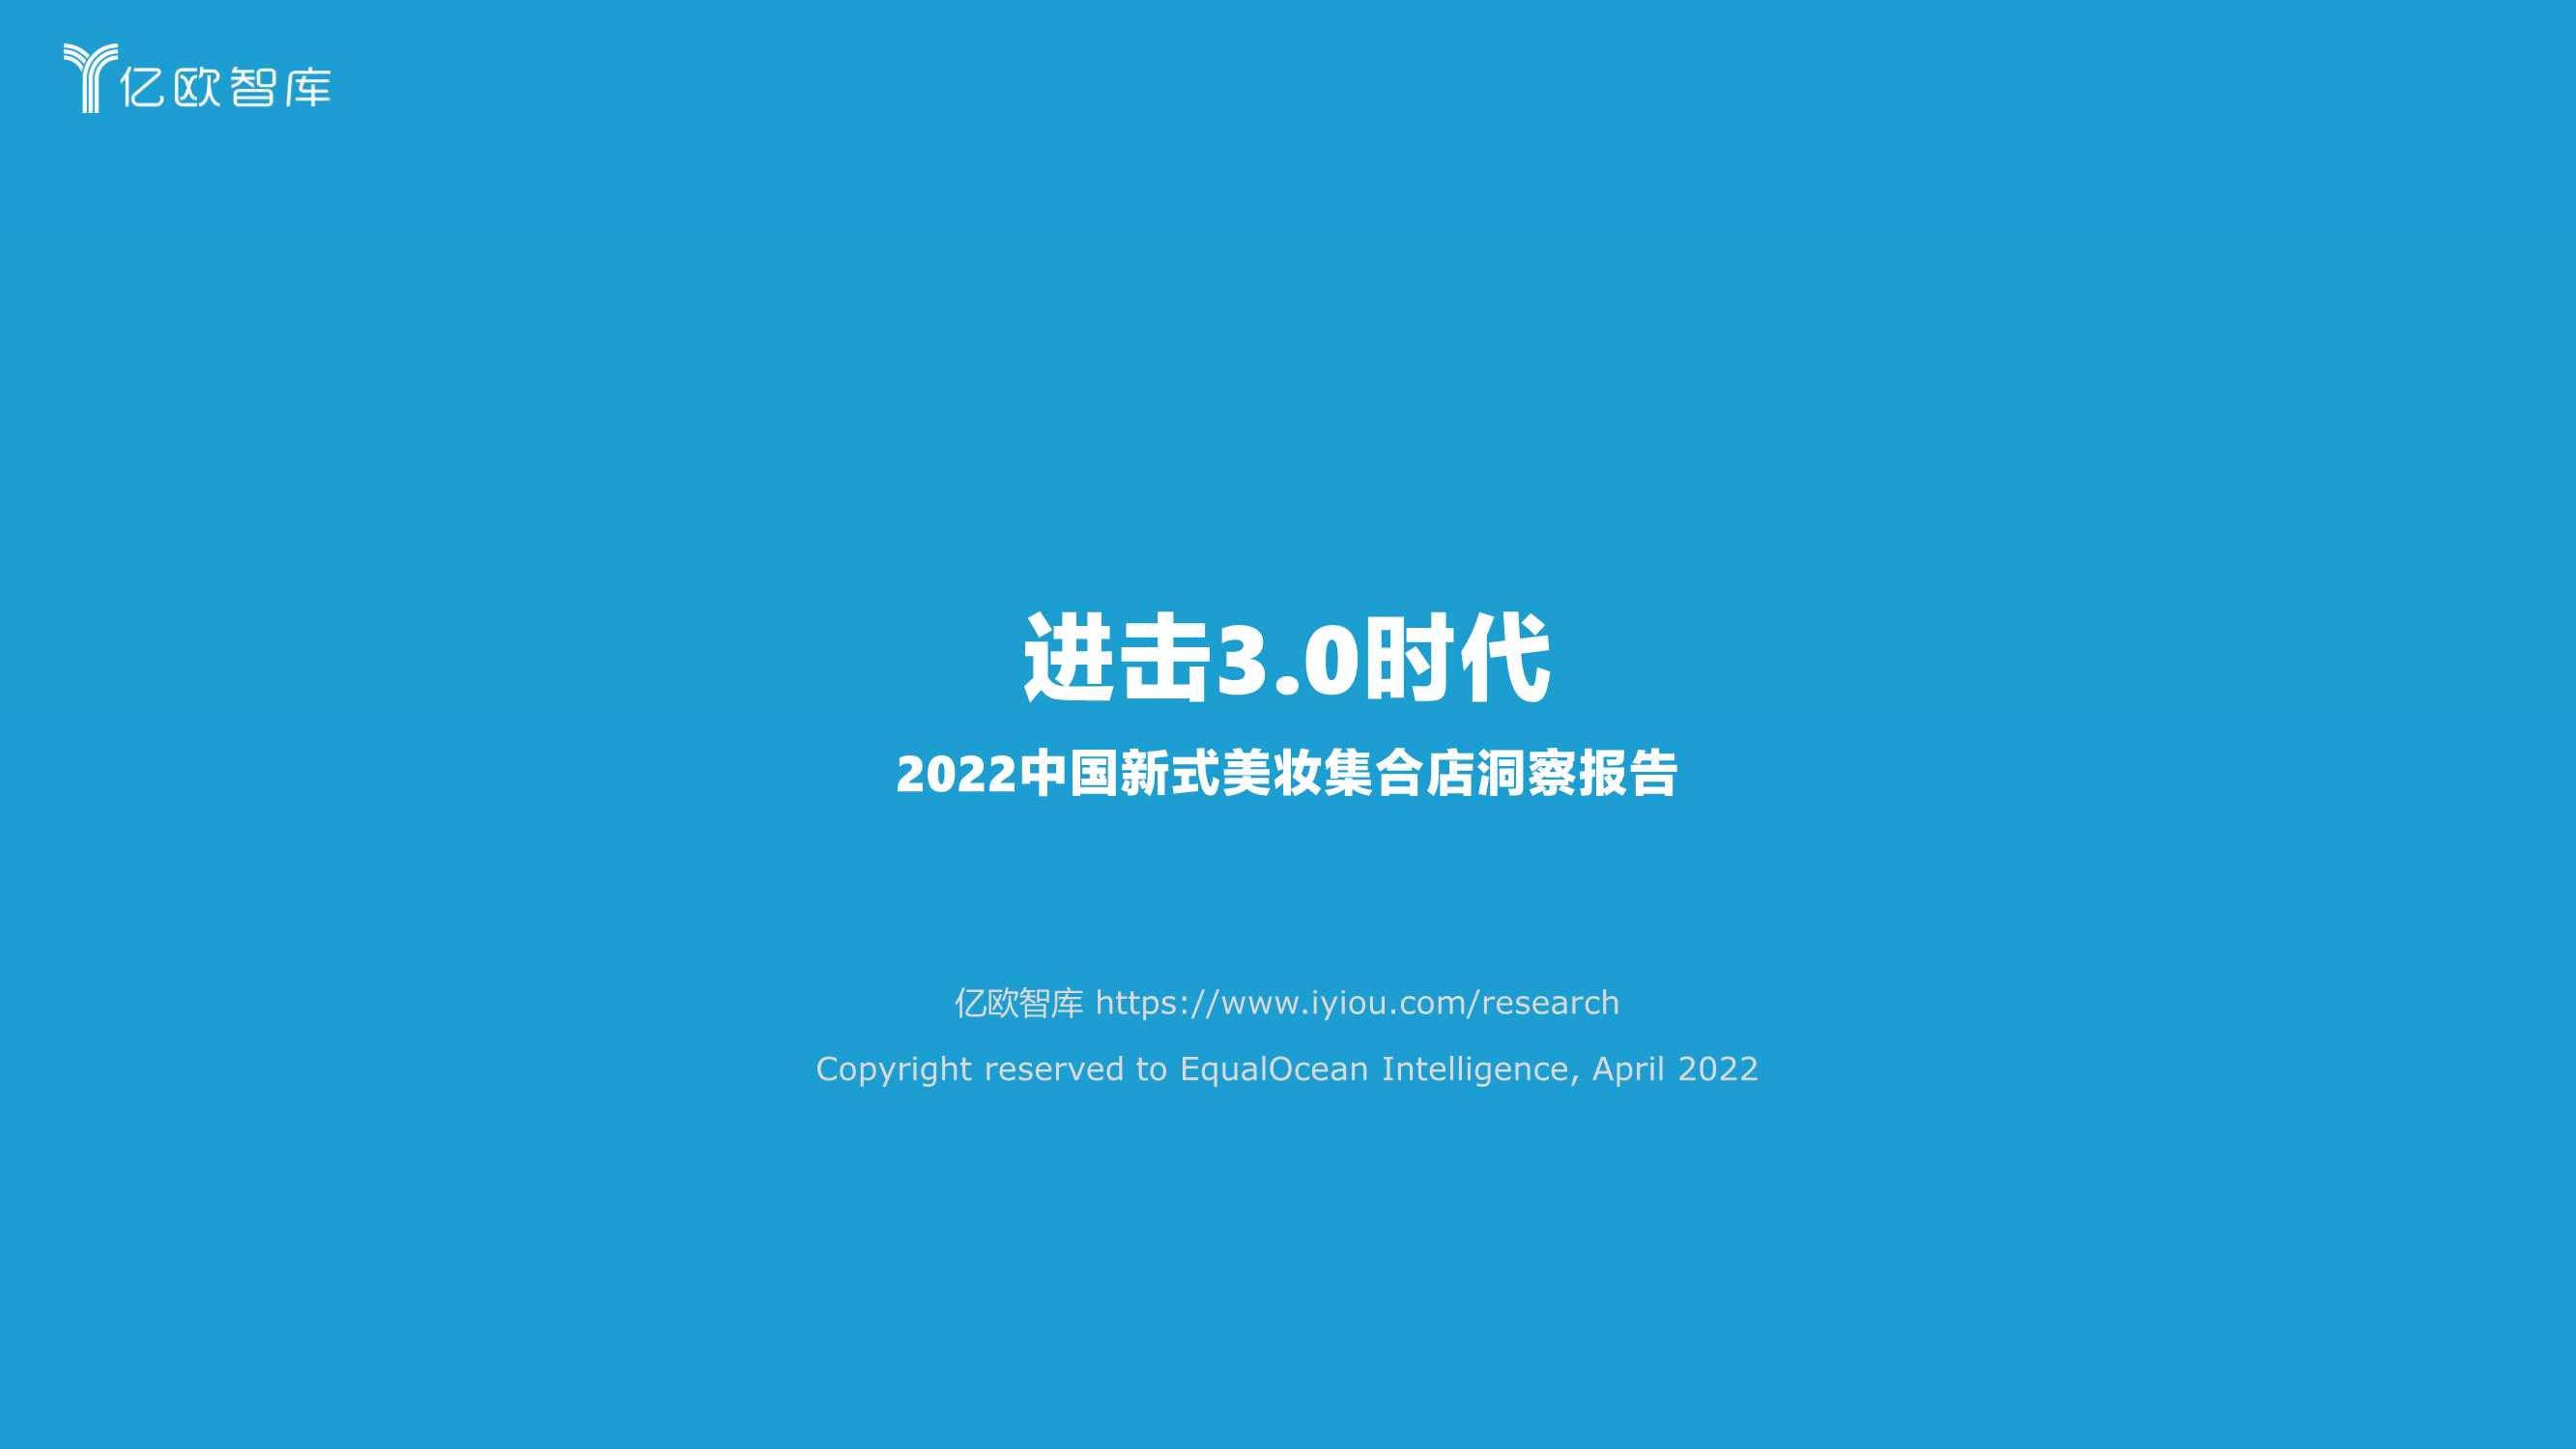 2022中国新式美妆集合店洞察报告-2022.05-38页